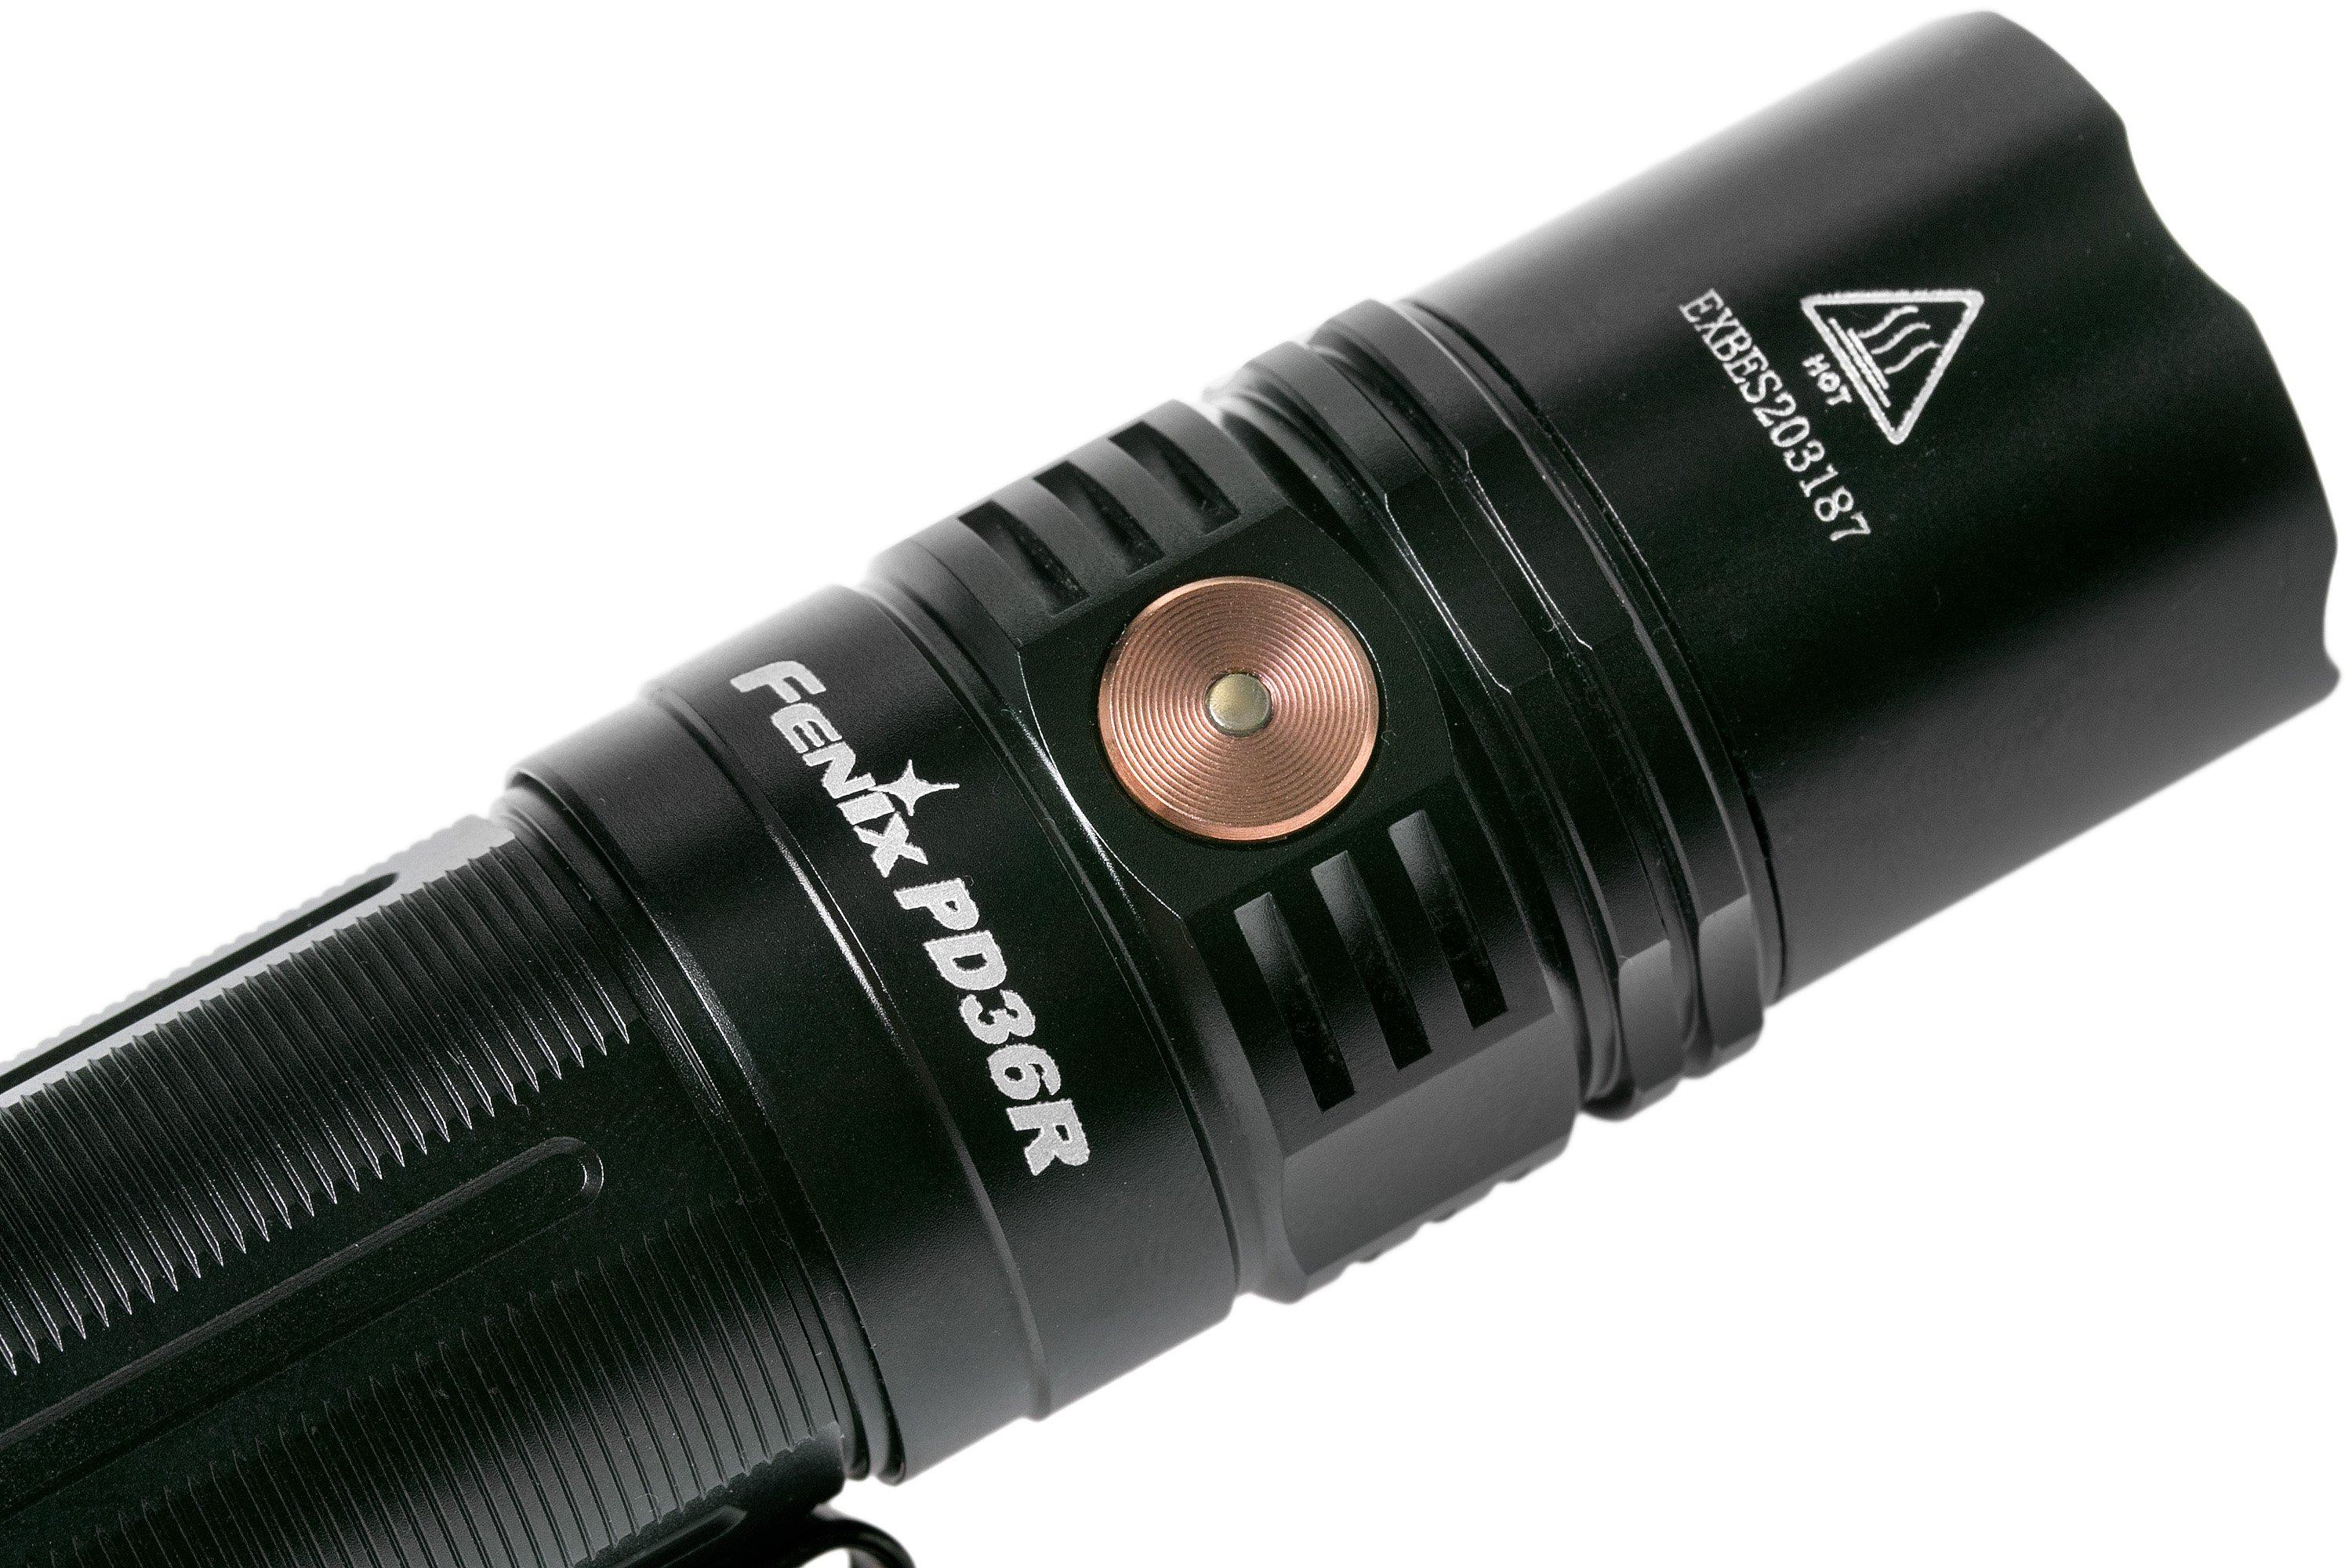  PD36R PRO - tactical rechargeable flashlight - FENIX -  130.65 € - outdoorové oblečení a vybavení shop